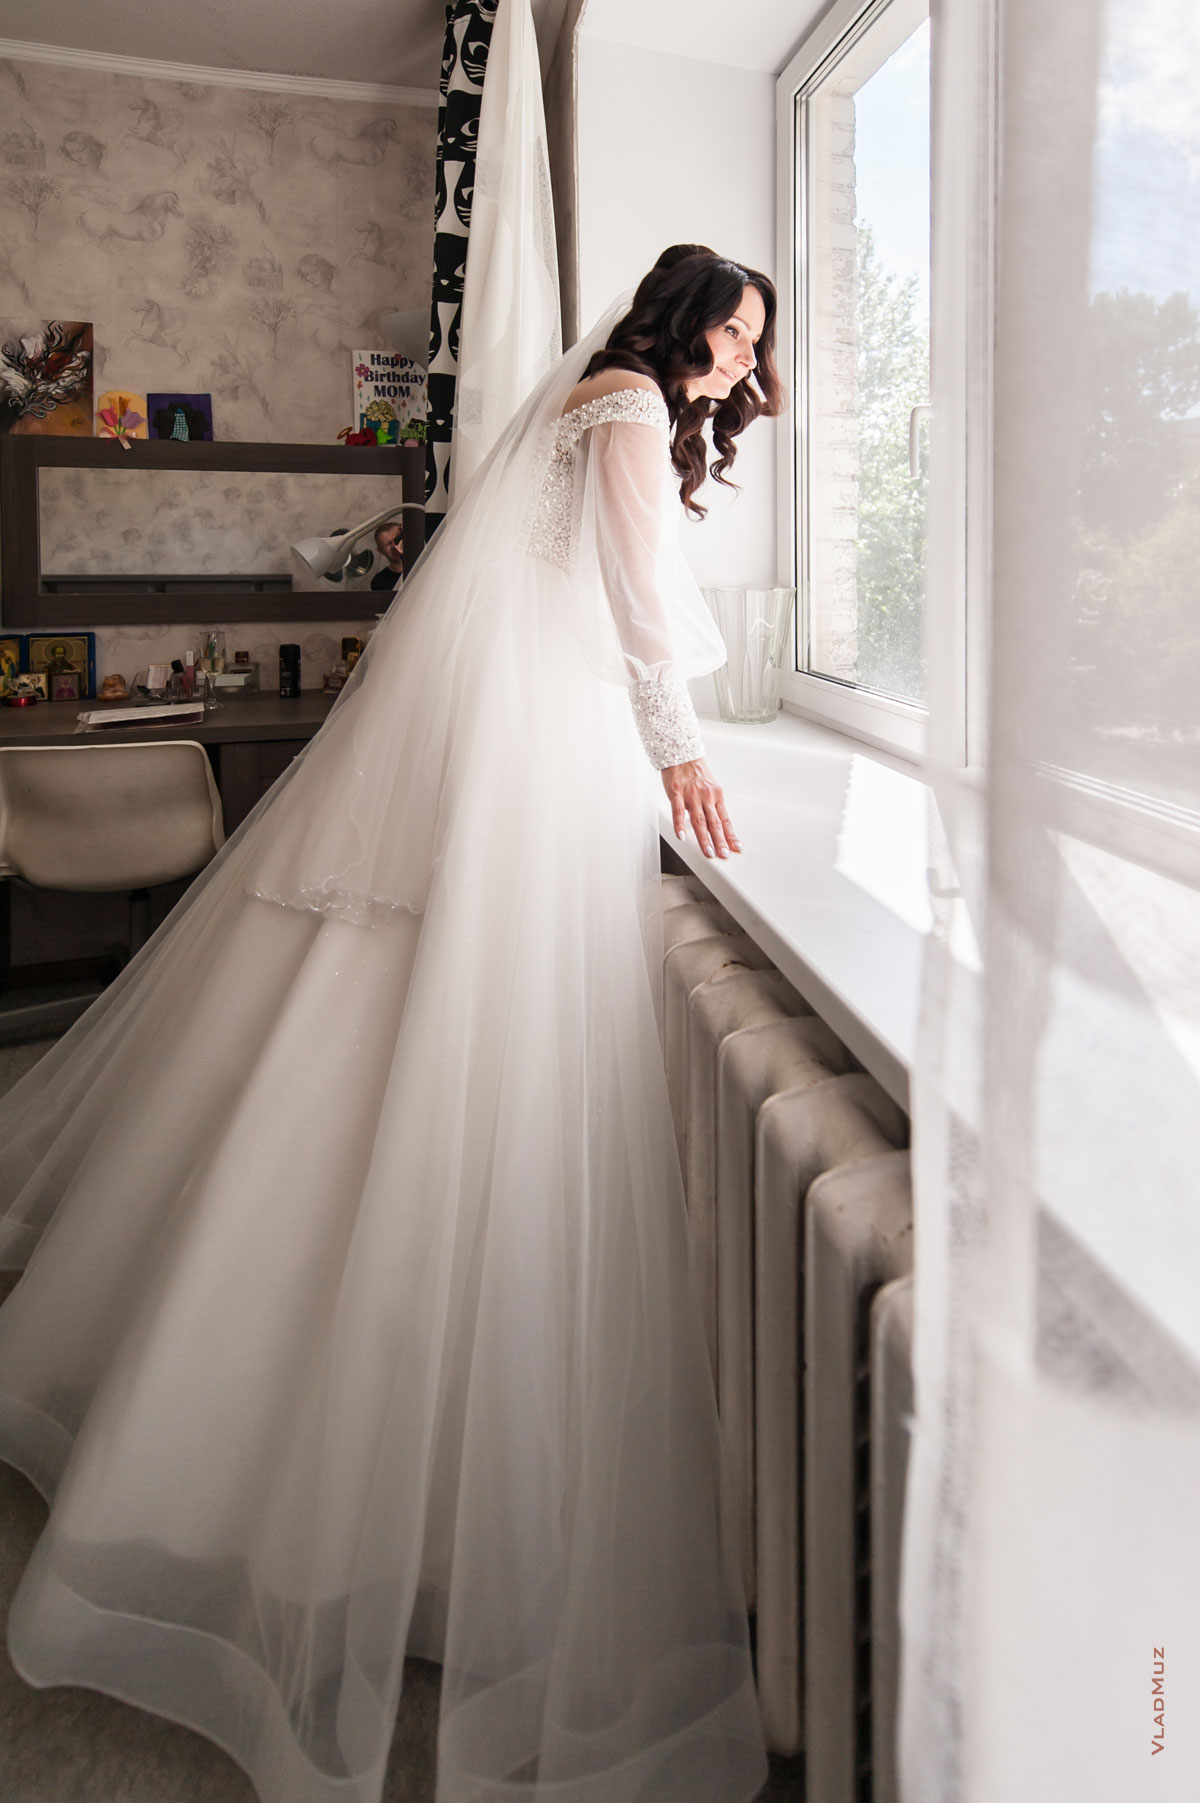 Фото невесты в свадебном платье в полный рост у окна в ожидании жениха